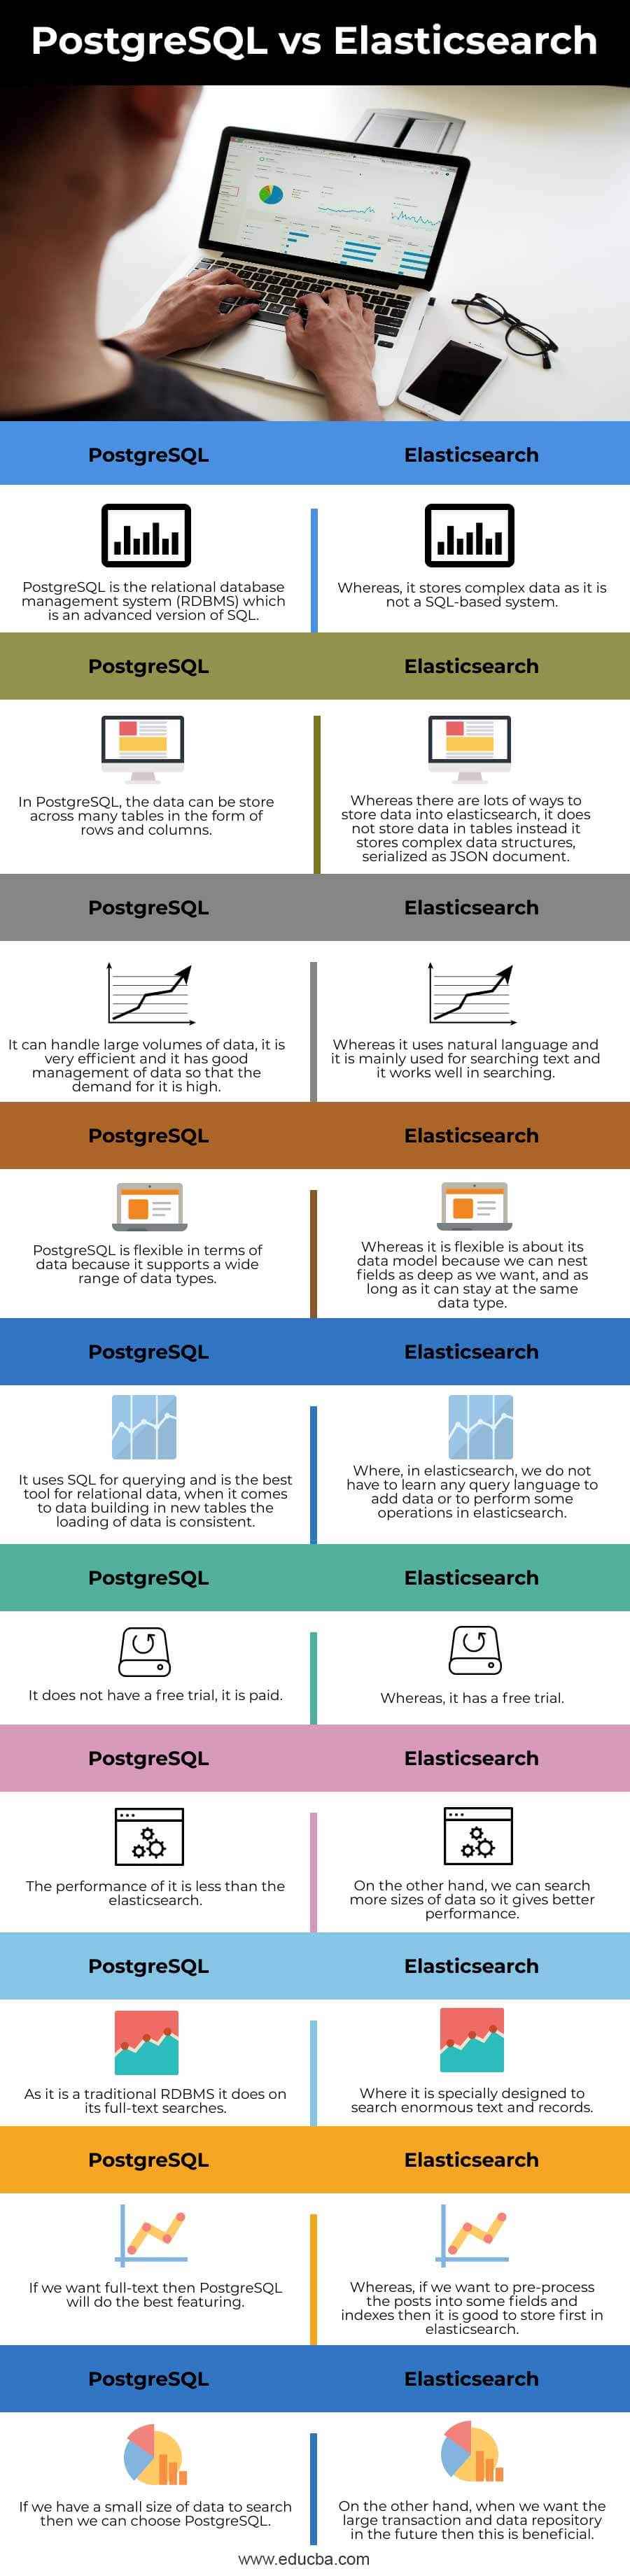 PostgreSQL-vs-Elasticsearch-info